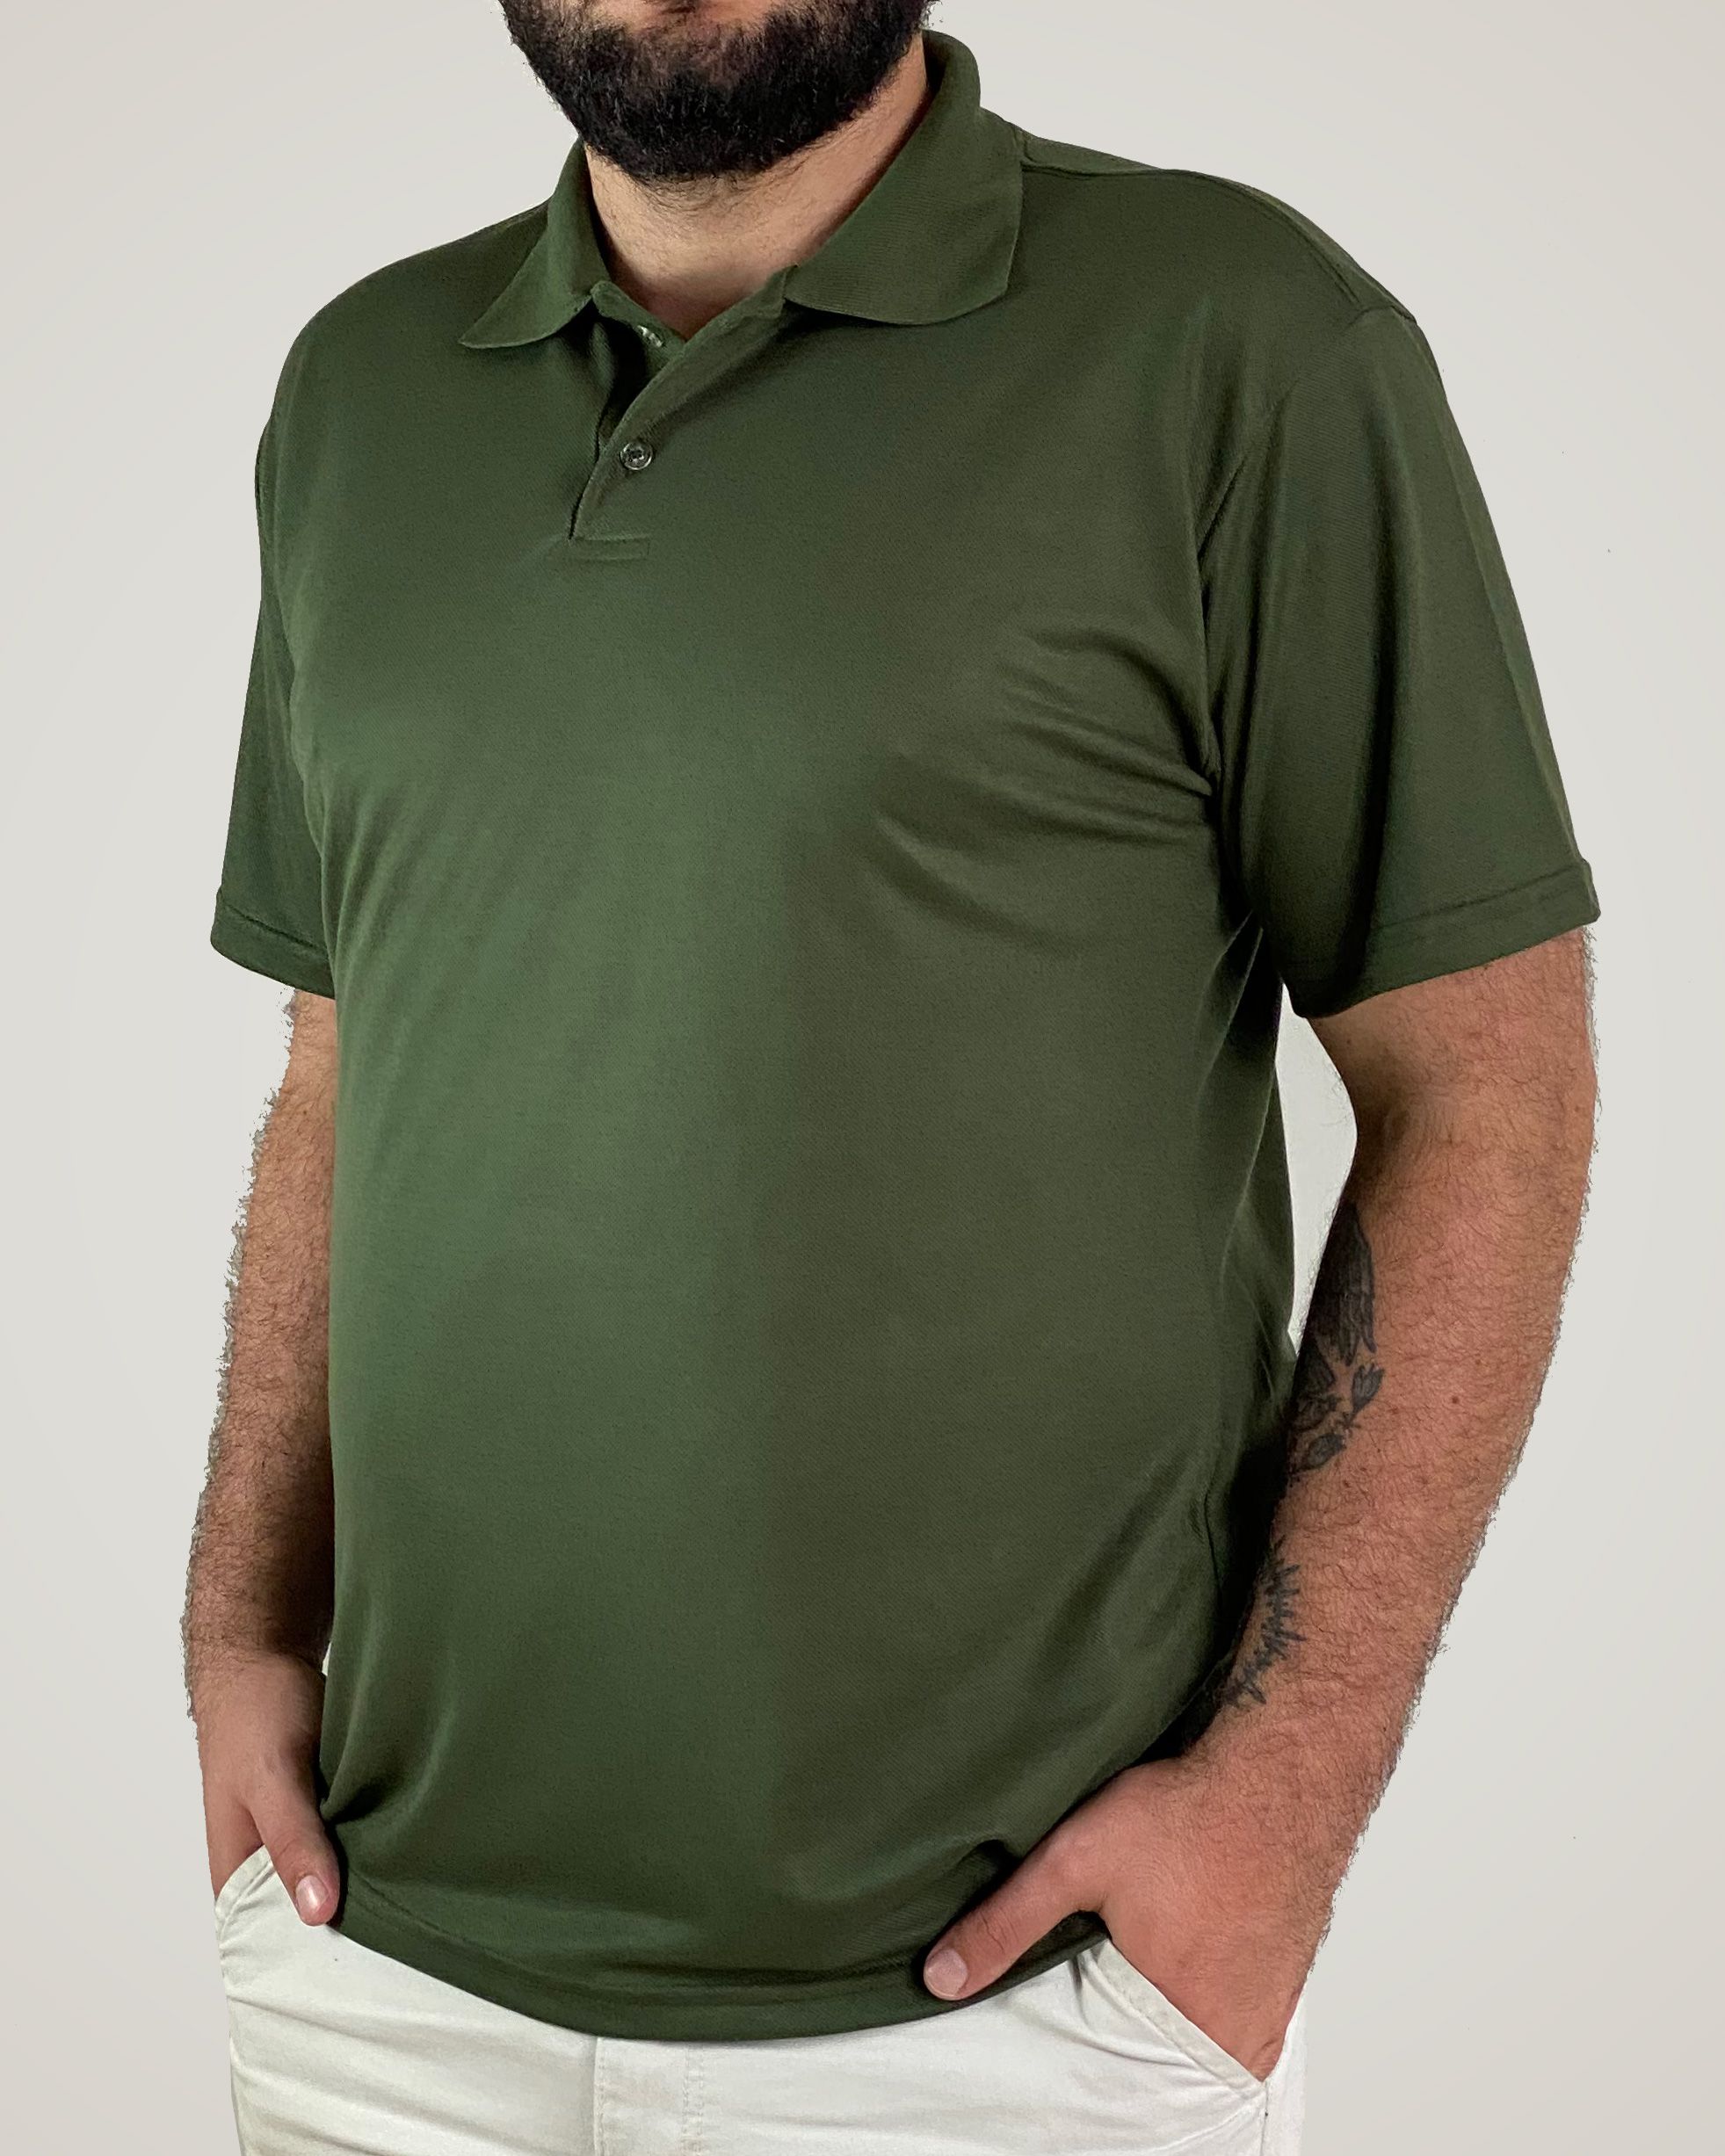 Camiseta Polo Verde Musgo, 100% Poliviscose - Fábrica de Camisetas Em  Curitiba - (41) 3286-1158 - Empório da Família